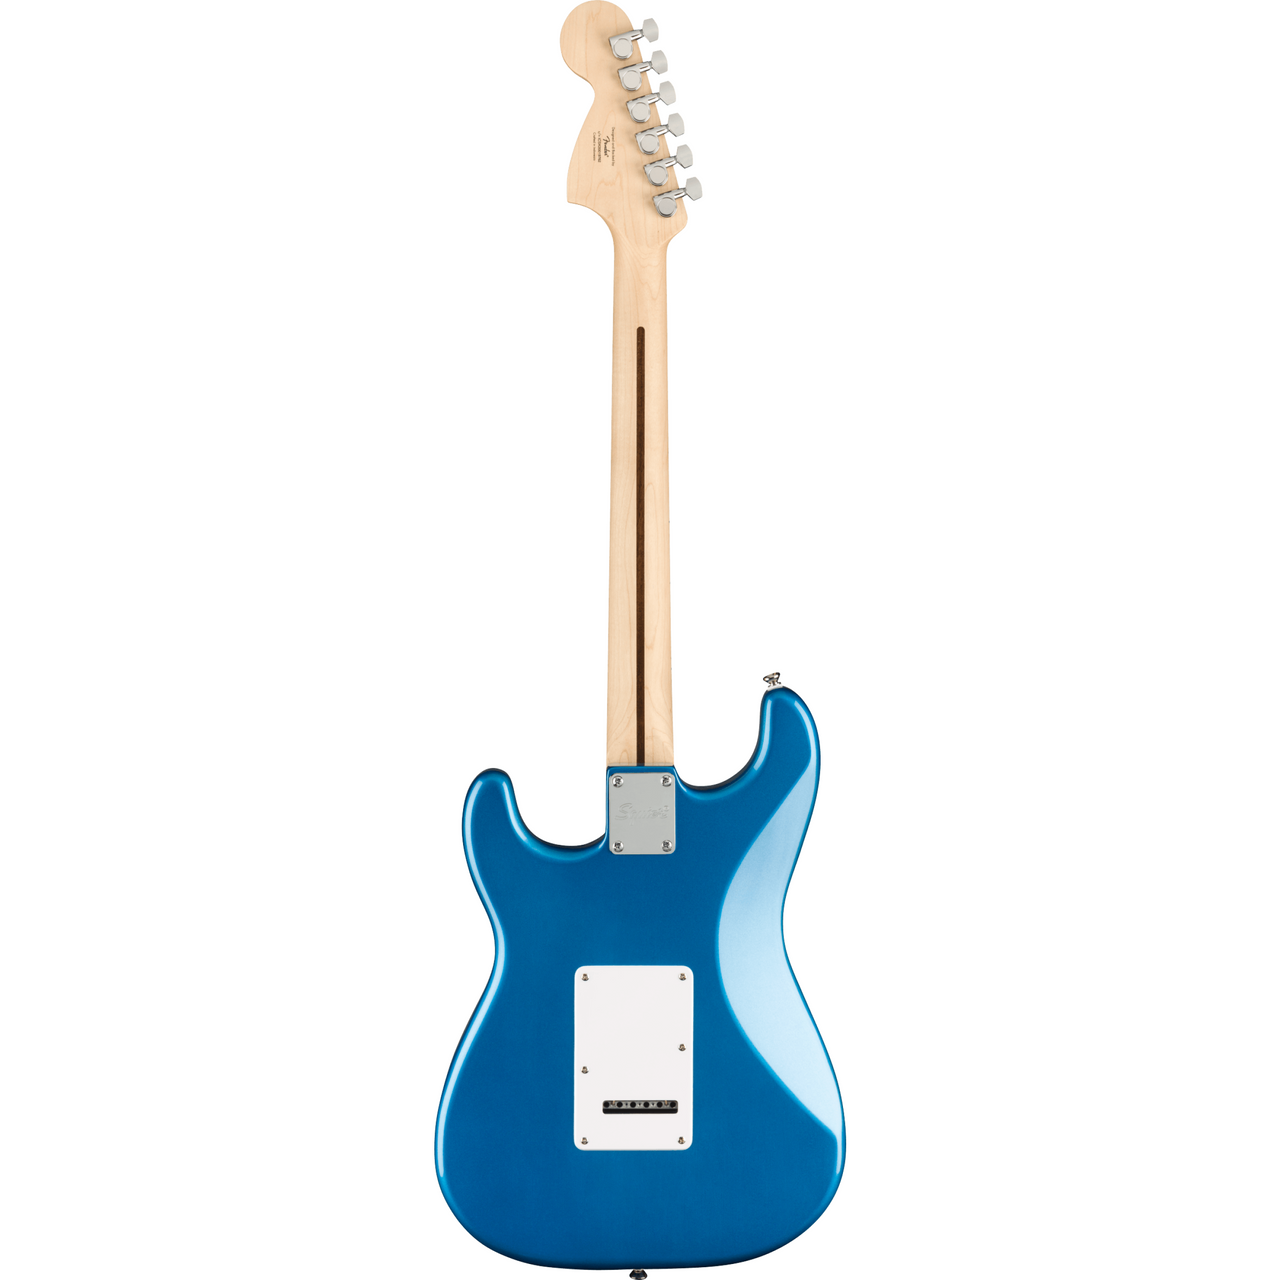 Paquete Guitarra Elect. Fender Pk Af Strat Hss Mn Lpb 120v, 0372820002